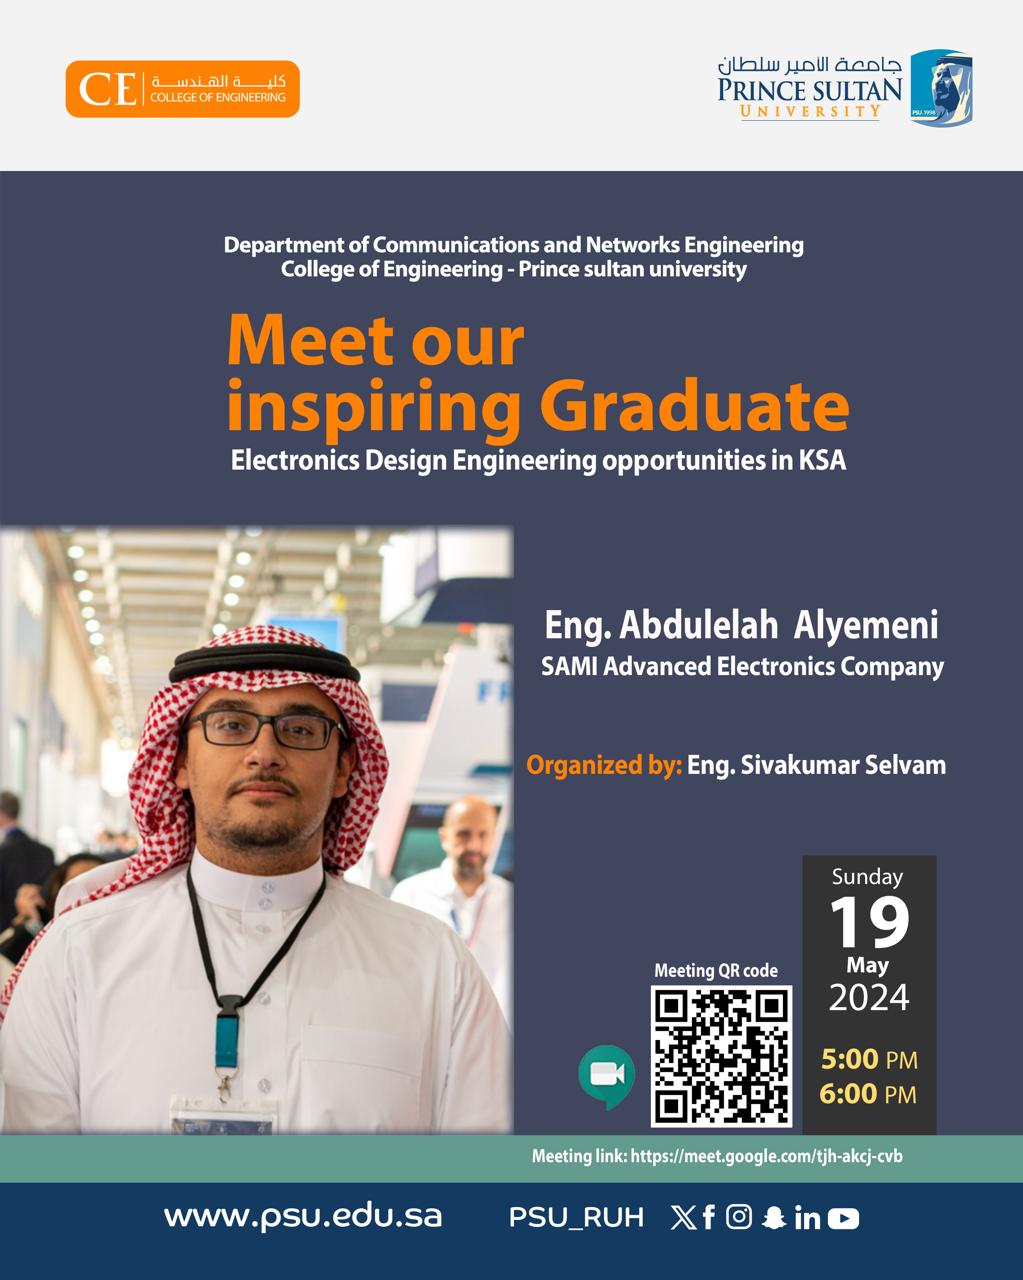 Alumni Talk: Looking to launch a career in electronics design within Saudi Arabia?